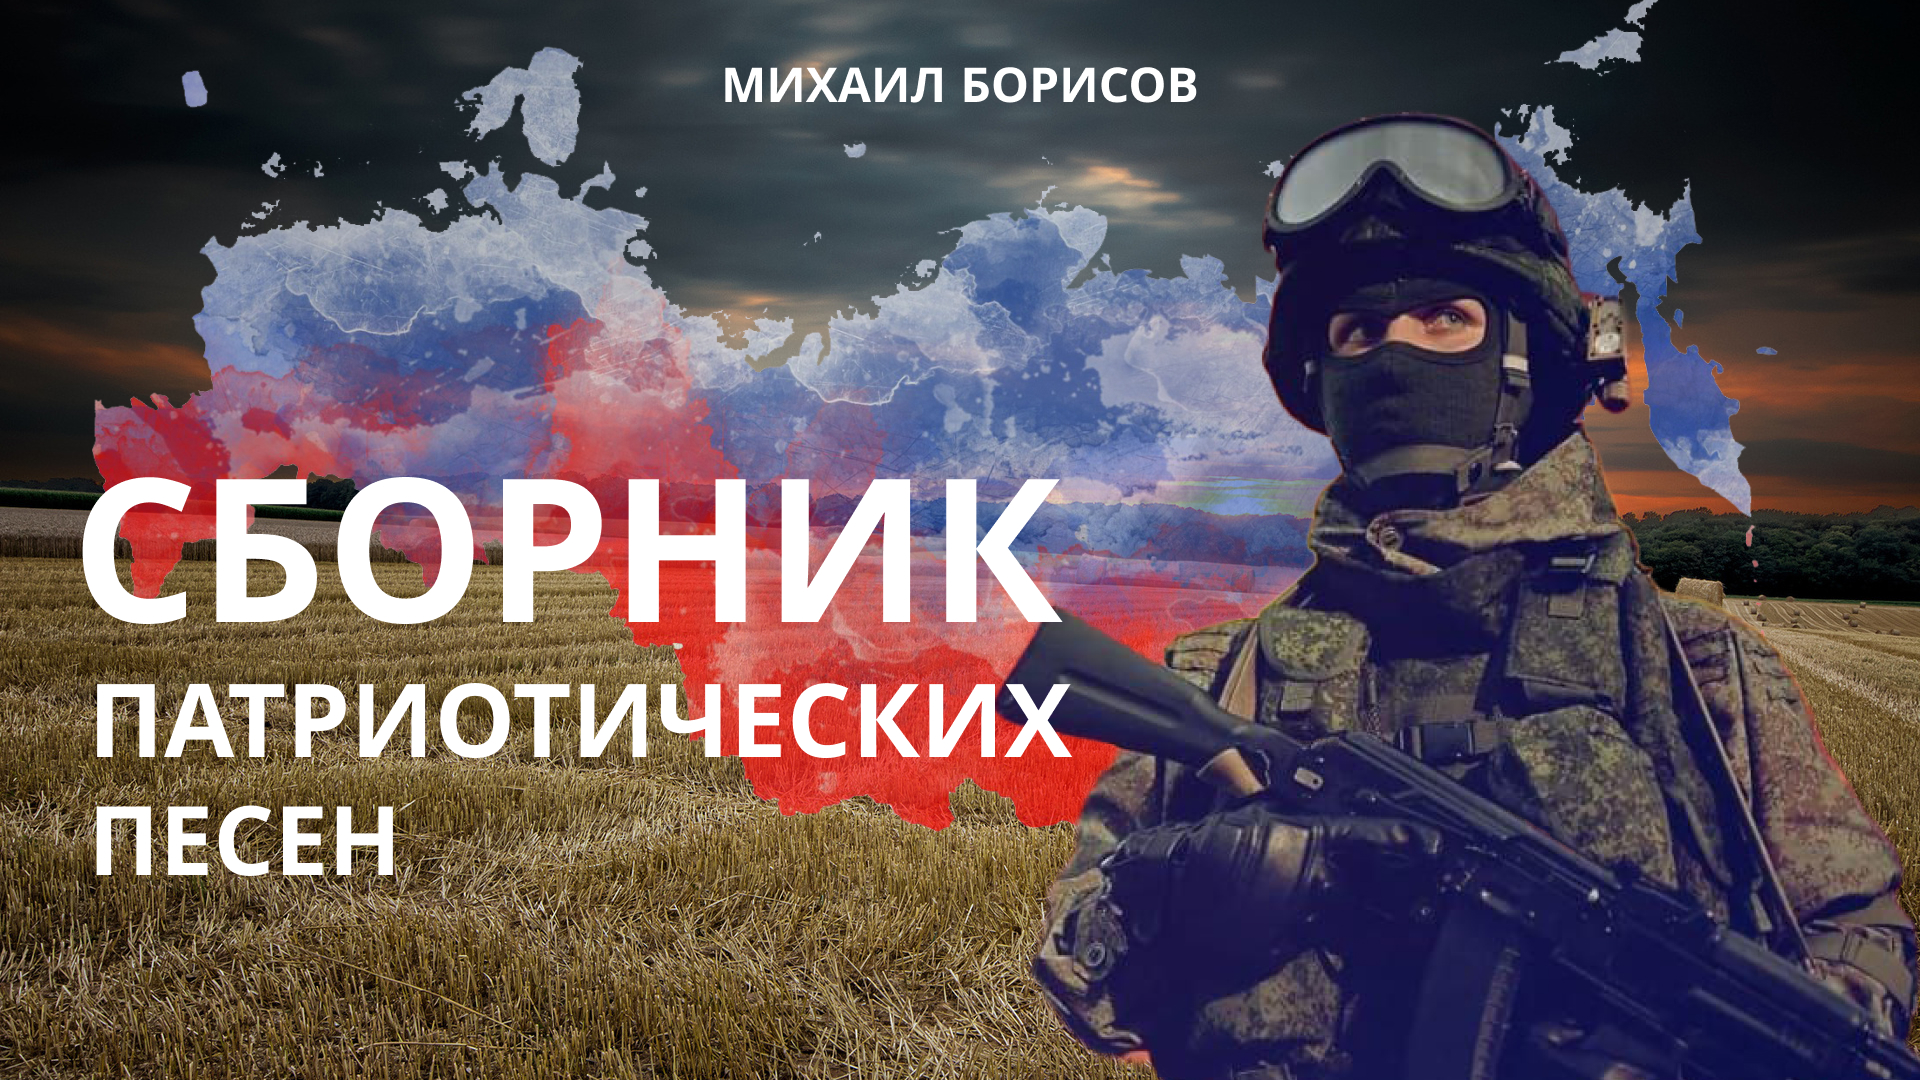 Военно-патриотические песни — Михаил Борисов